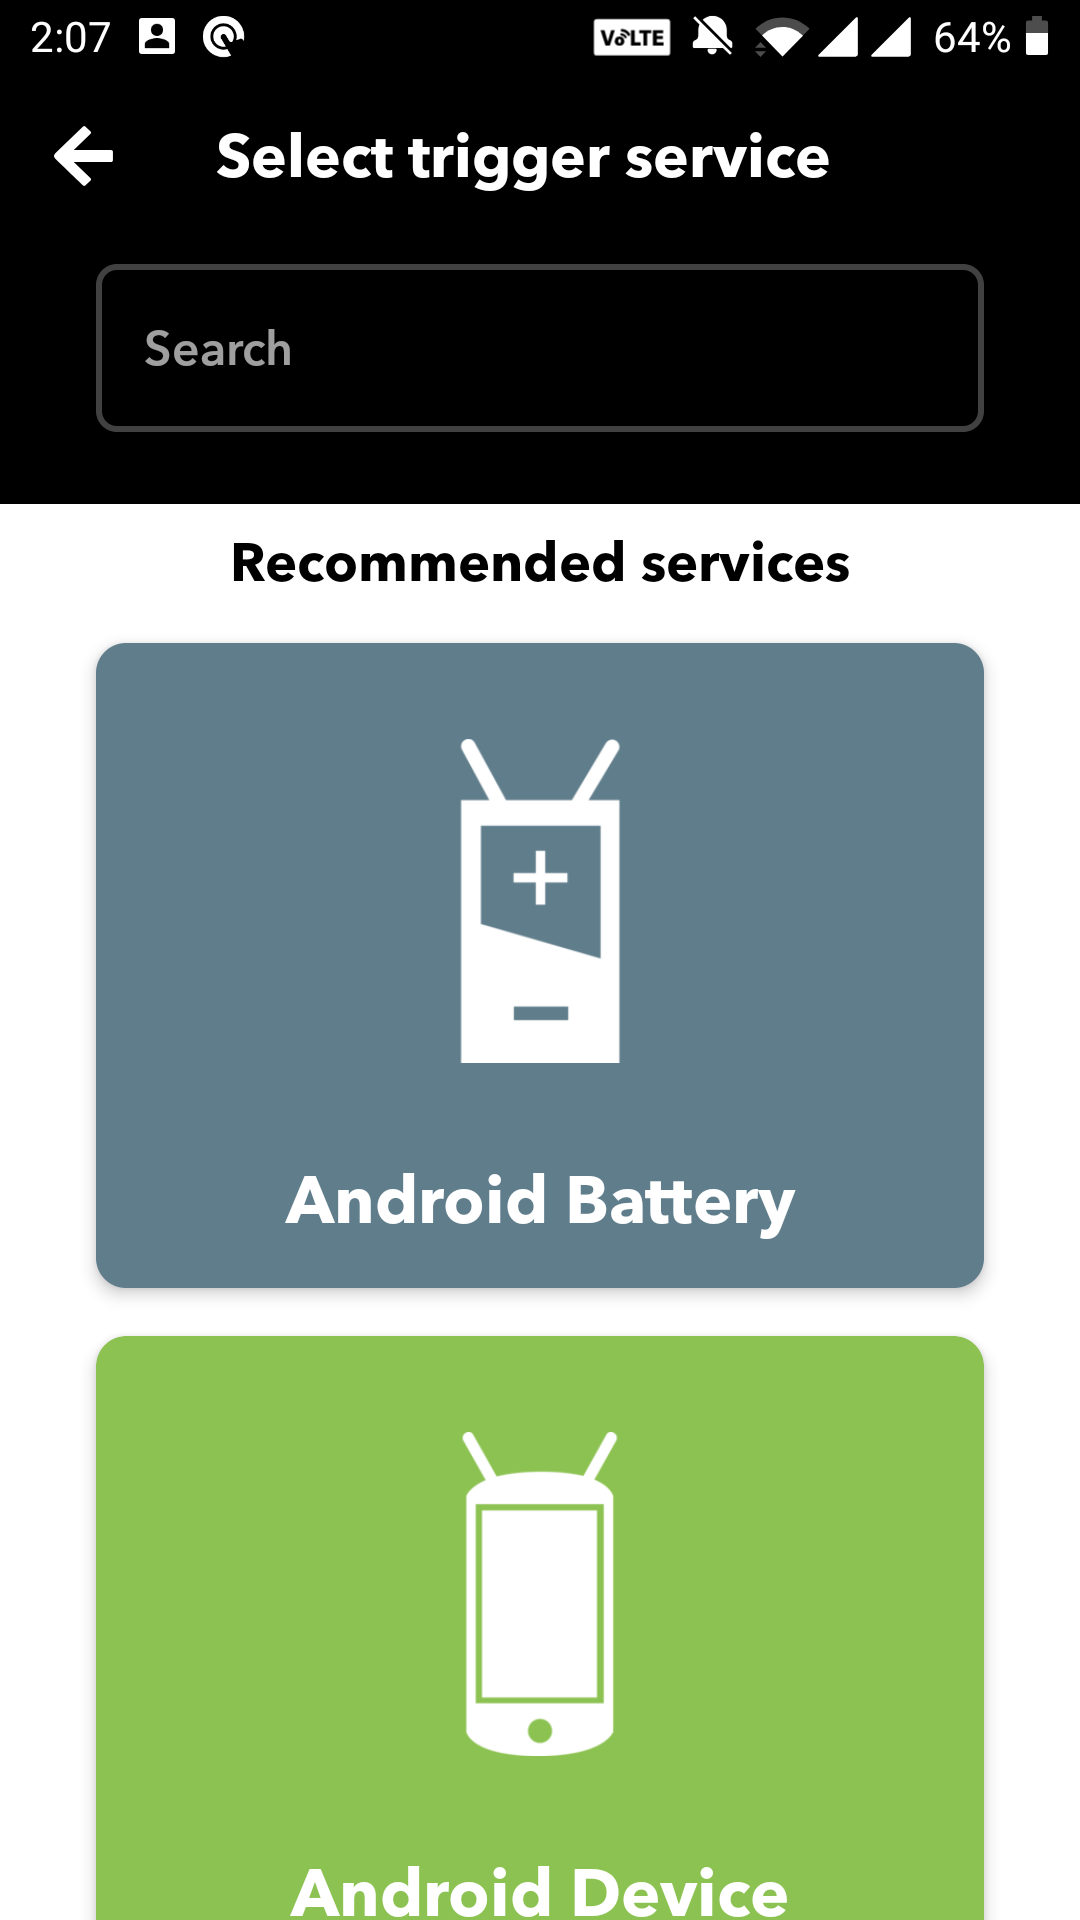 android battery ifttt - 6 automazioni IFTTT da provare con una presa intelligente o una lampadina